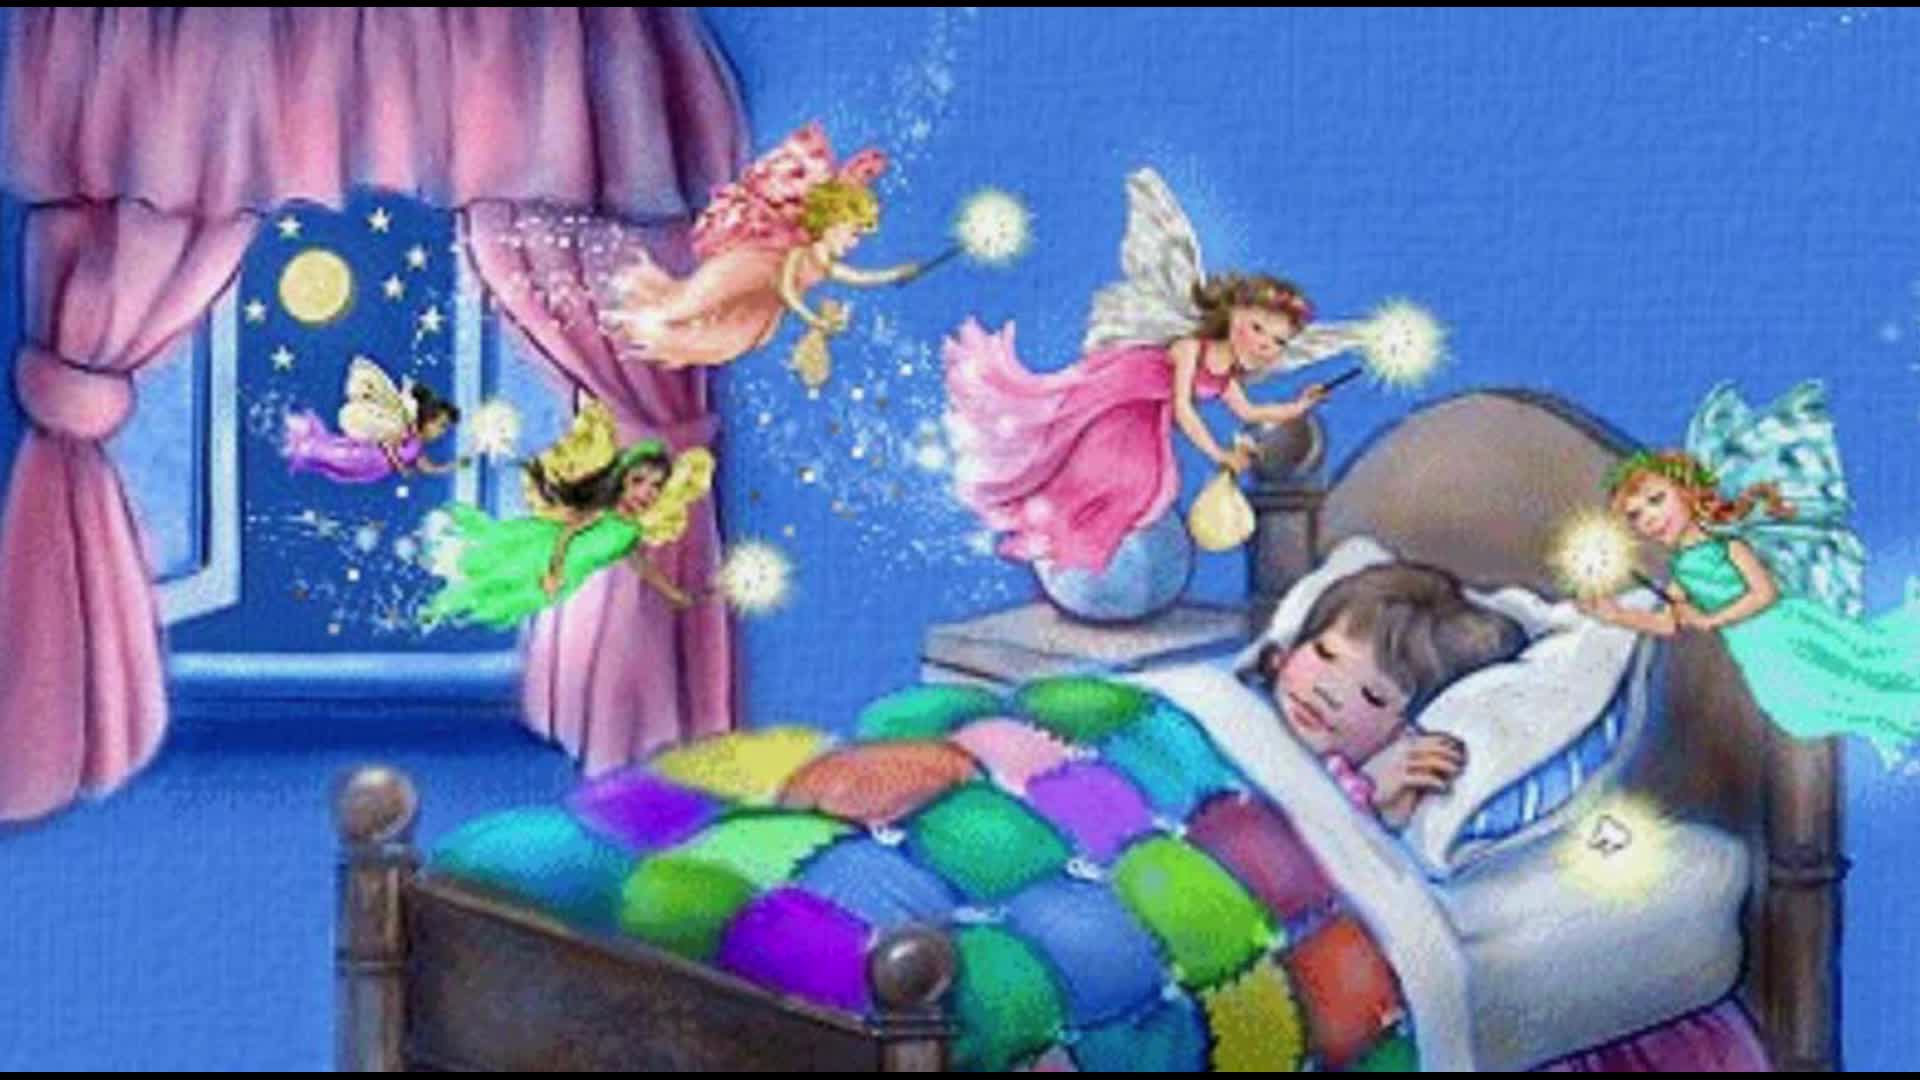 Истории на ночь для сна. Сказочный сон ребенка. Детские сказочные сны. Сон картинки для детей. Спокойной ночи Фея.